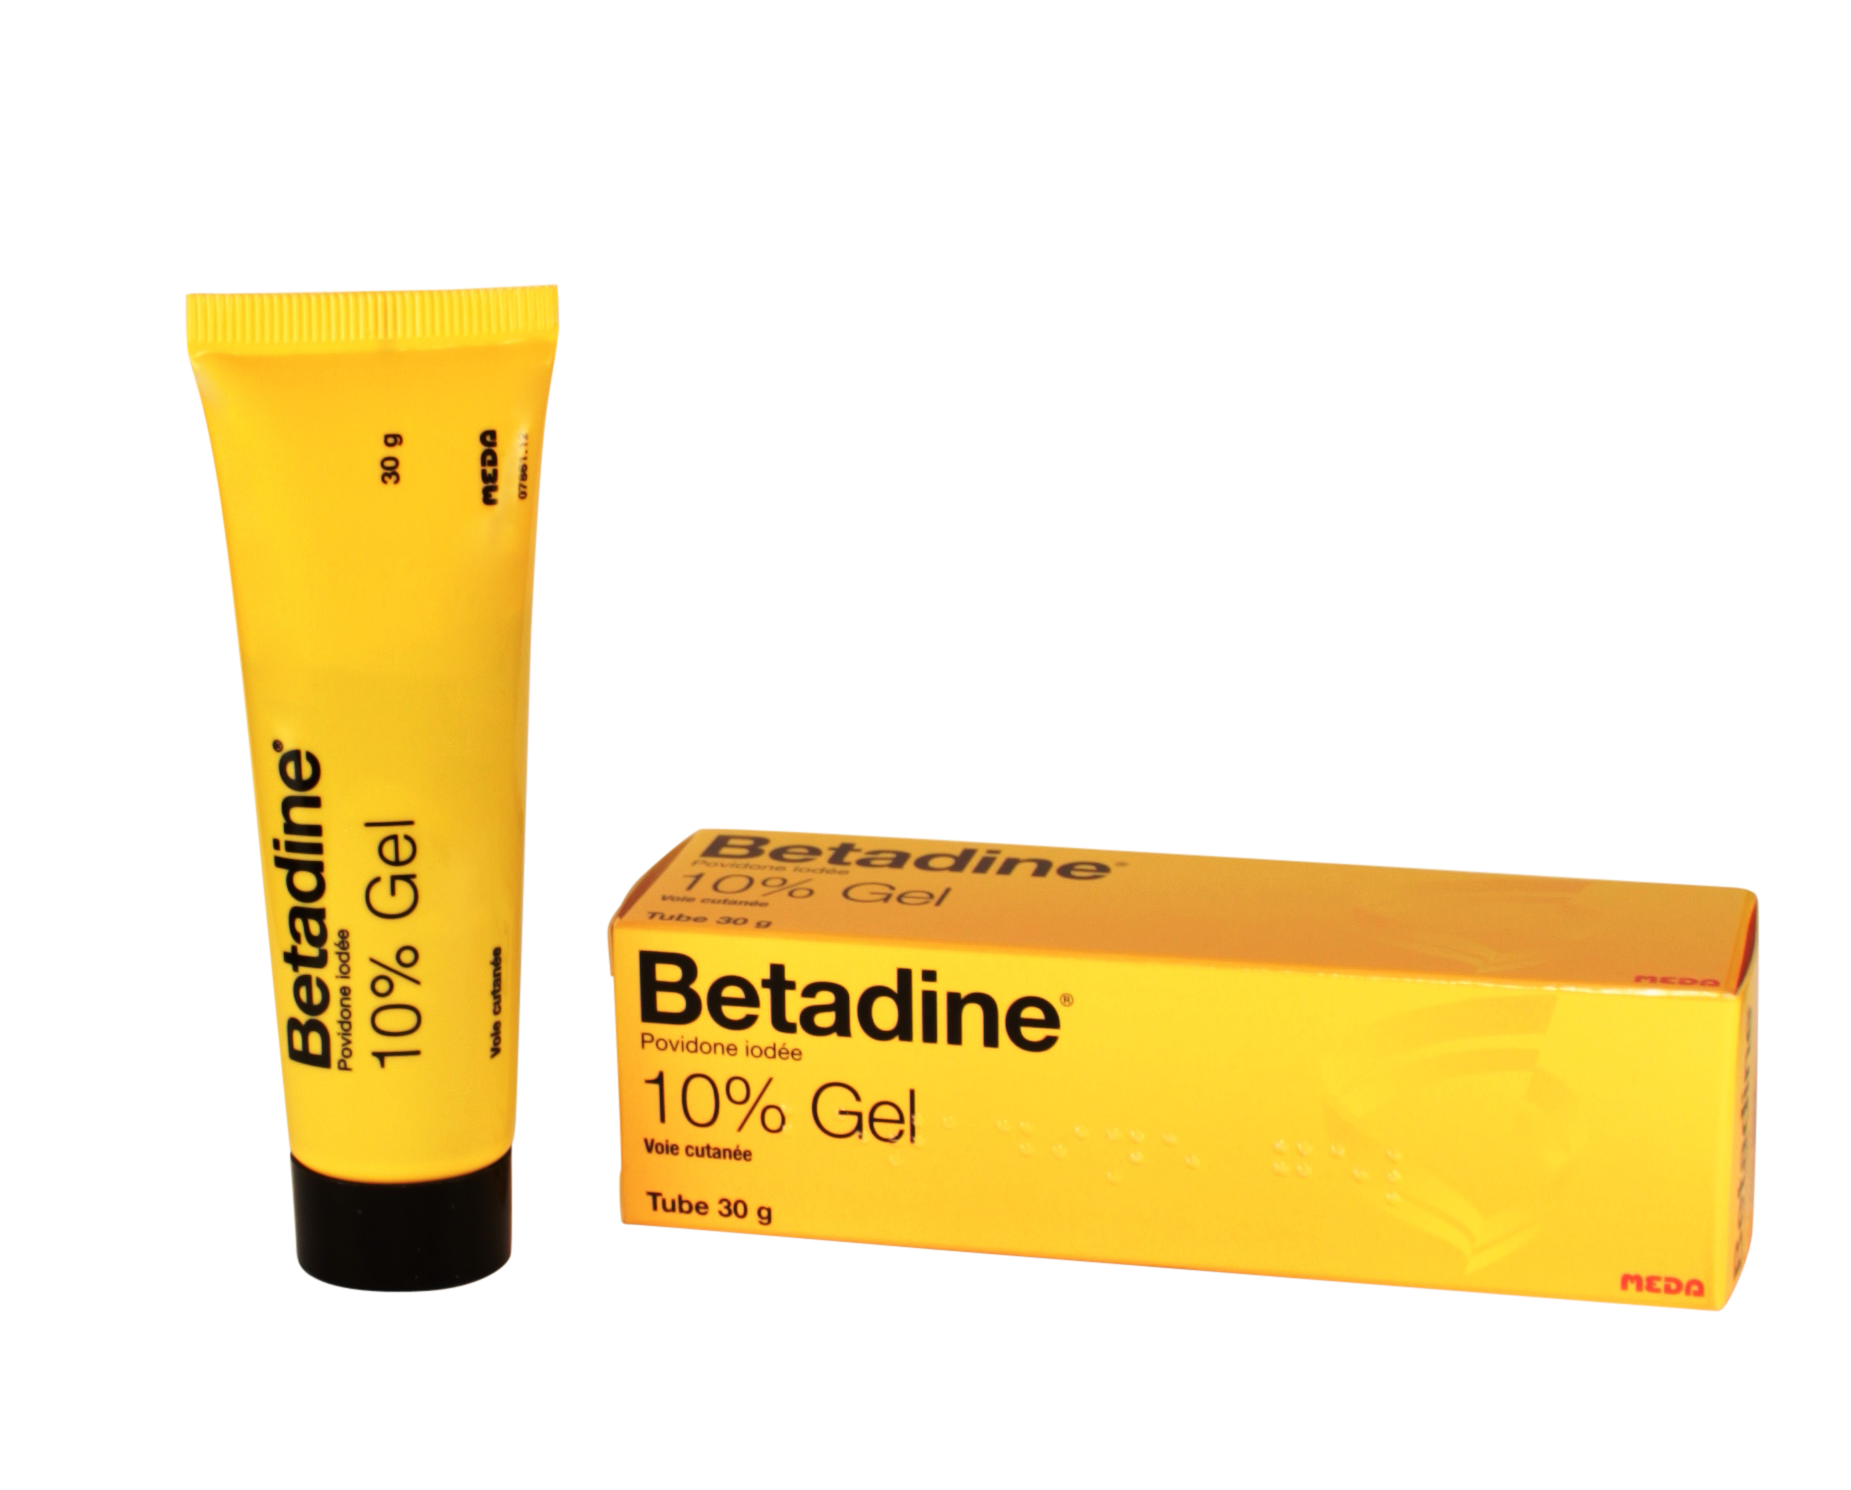 Betadine 10% Gel - 30 g